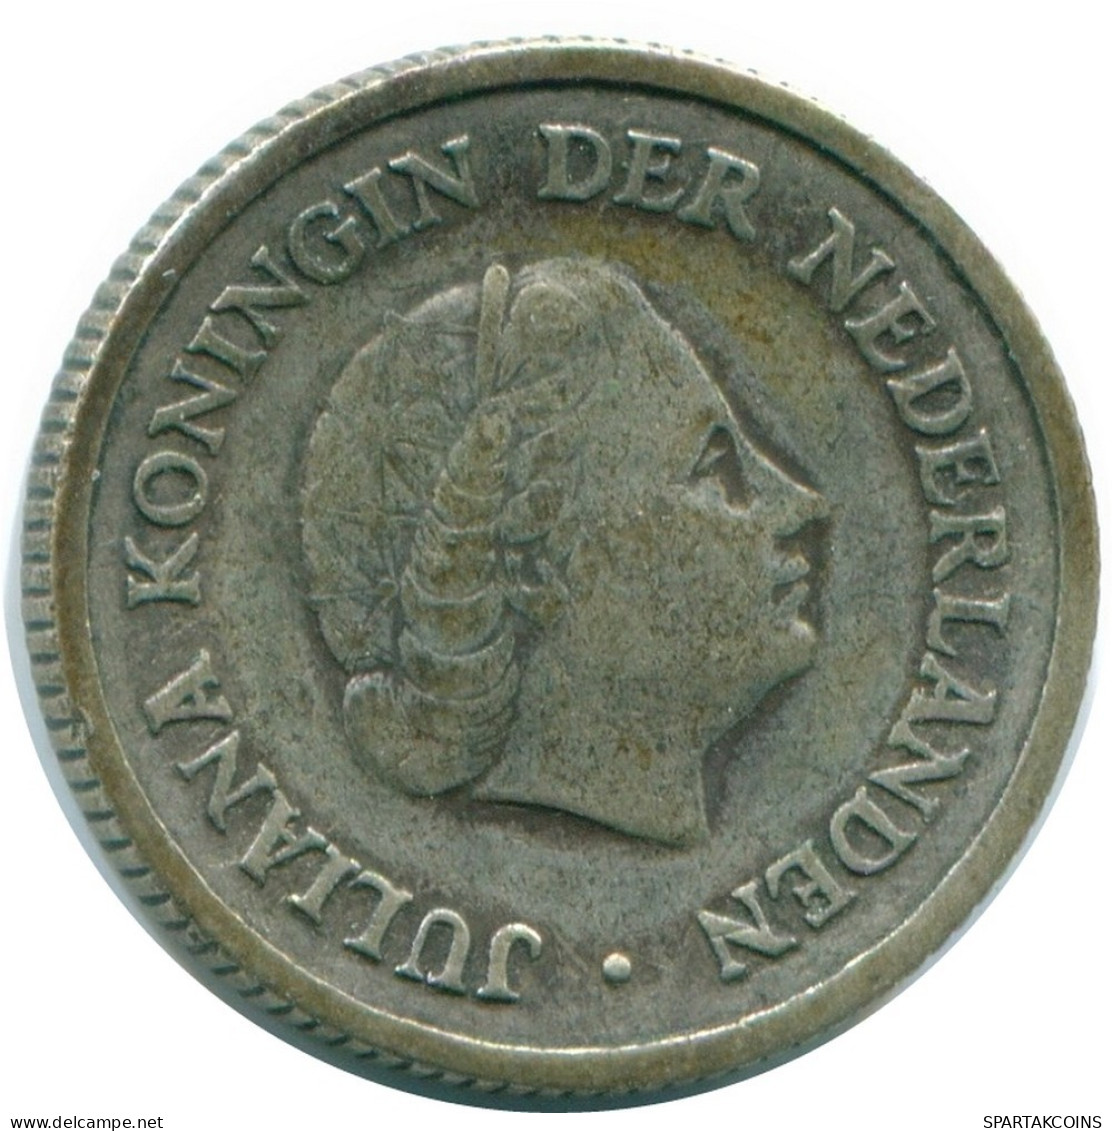 1/4 GULDEN 1956 NIEDERLÄNDISCHE ANTILLEN SILBER Koloniale Münze #NL10932.4.D.A - Antille Olandesi